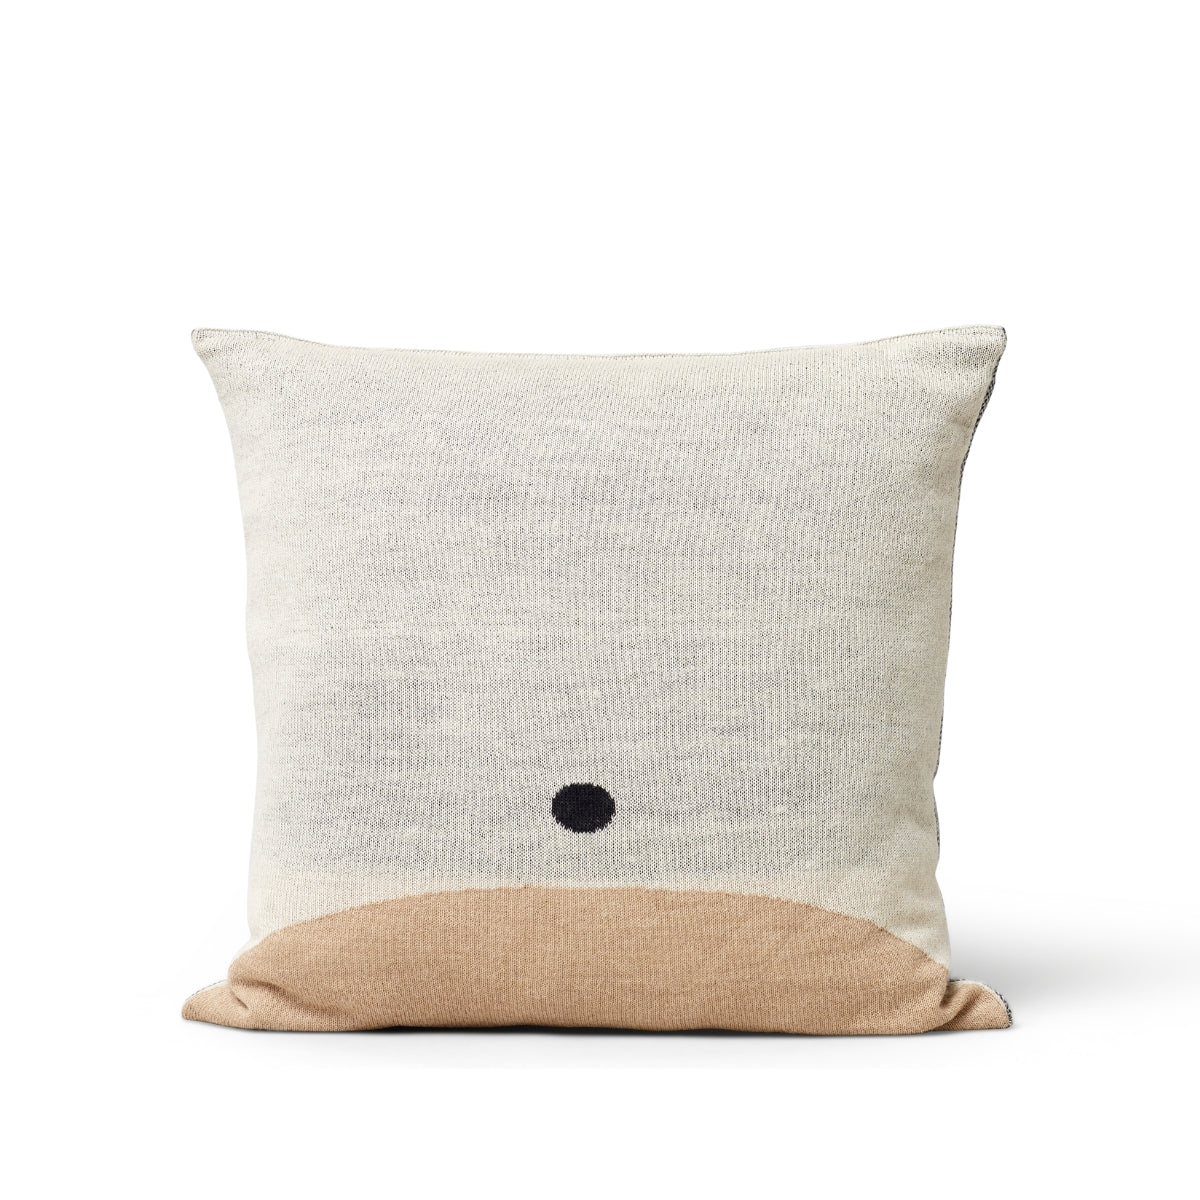 Form & Refine | Aymara Cushion - Pattern Cream